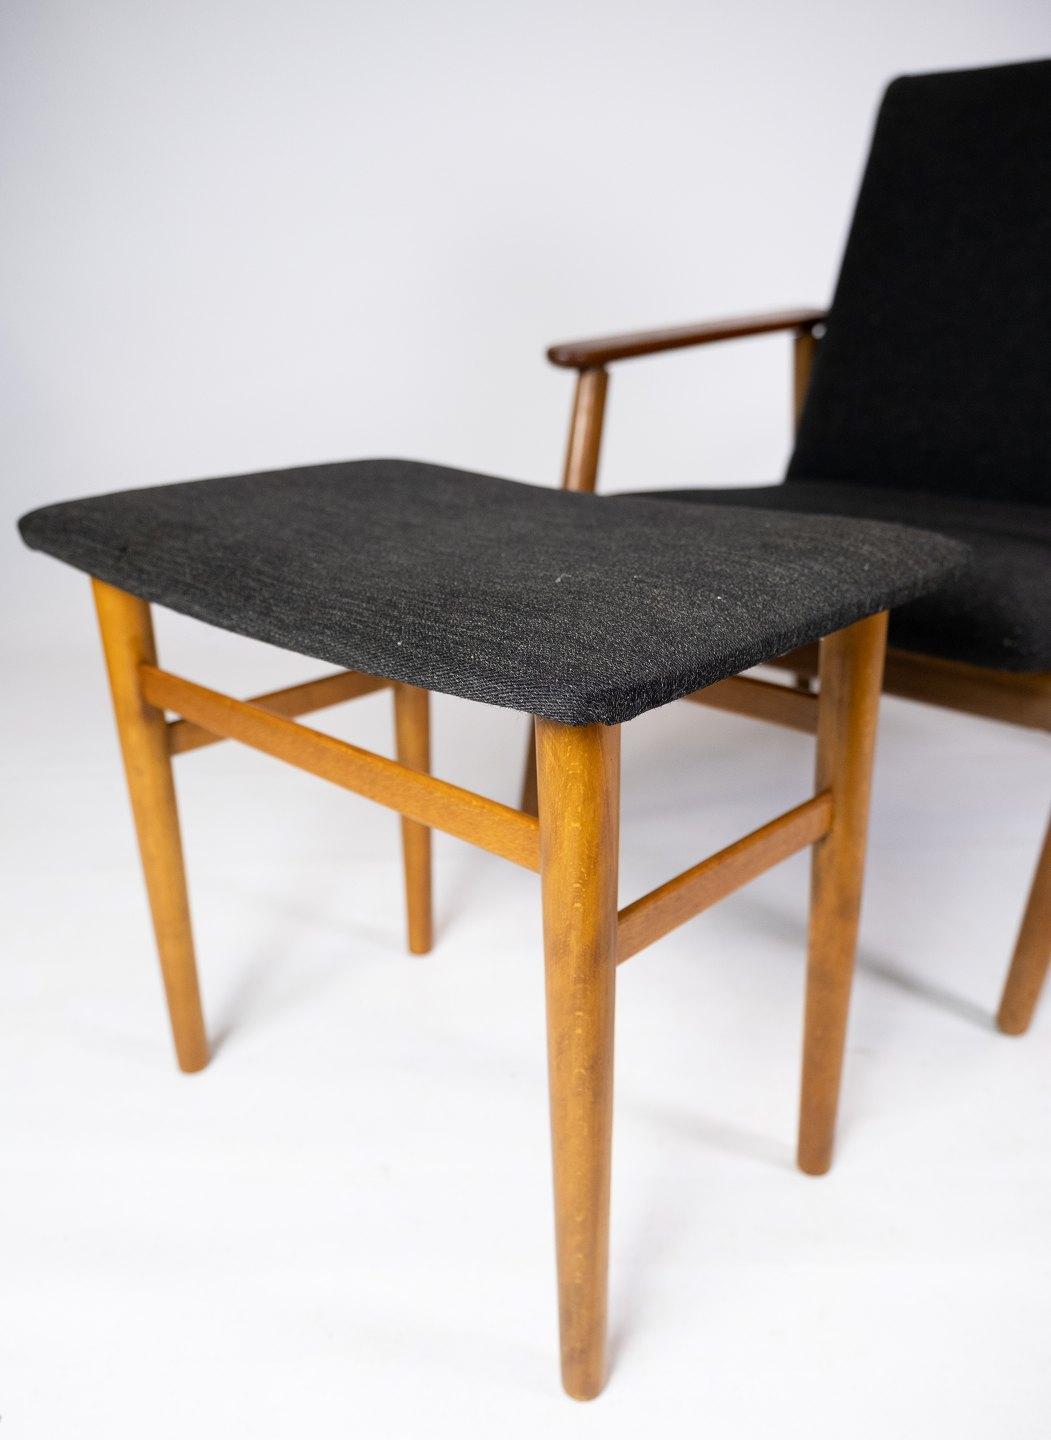 
Ce fauteuil de conception danoise et son tabouret assorti, datant des années 1960, incarnent le mélange de confort, d'artisanat et de style de l'époque. Fabriqué en bois de teck chaud, il dégage un charme intemporel, tandis que le tissu en laine